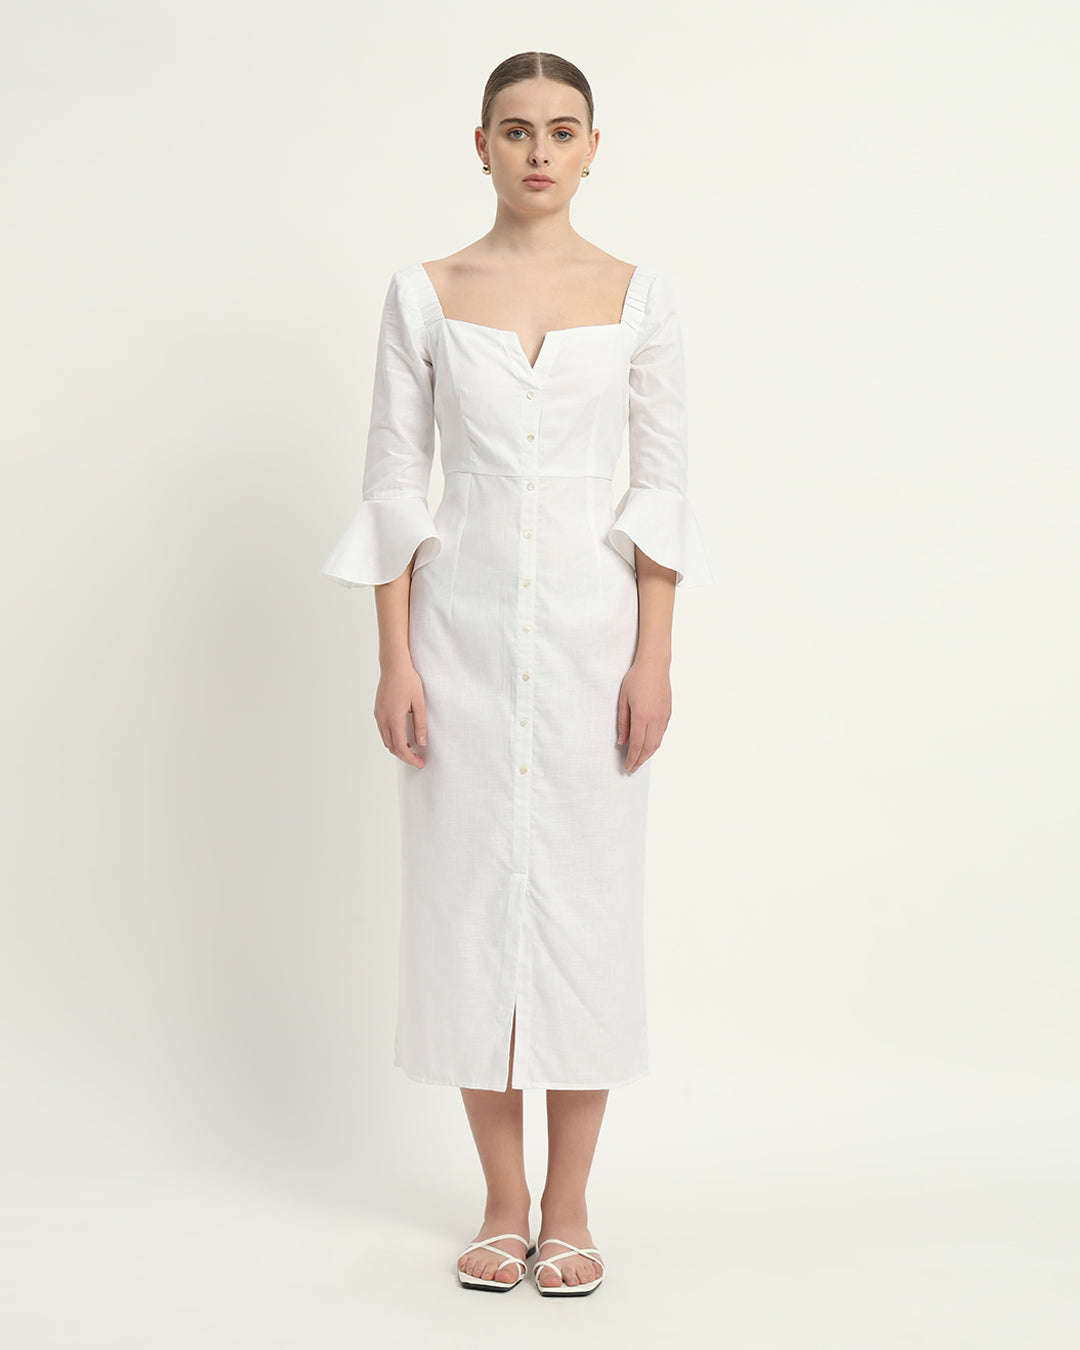 The Rosendale Daisy White Linen Dress